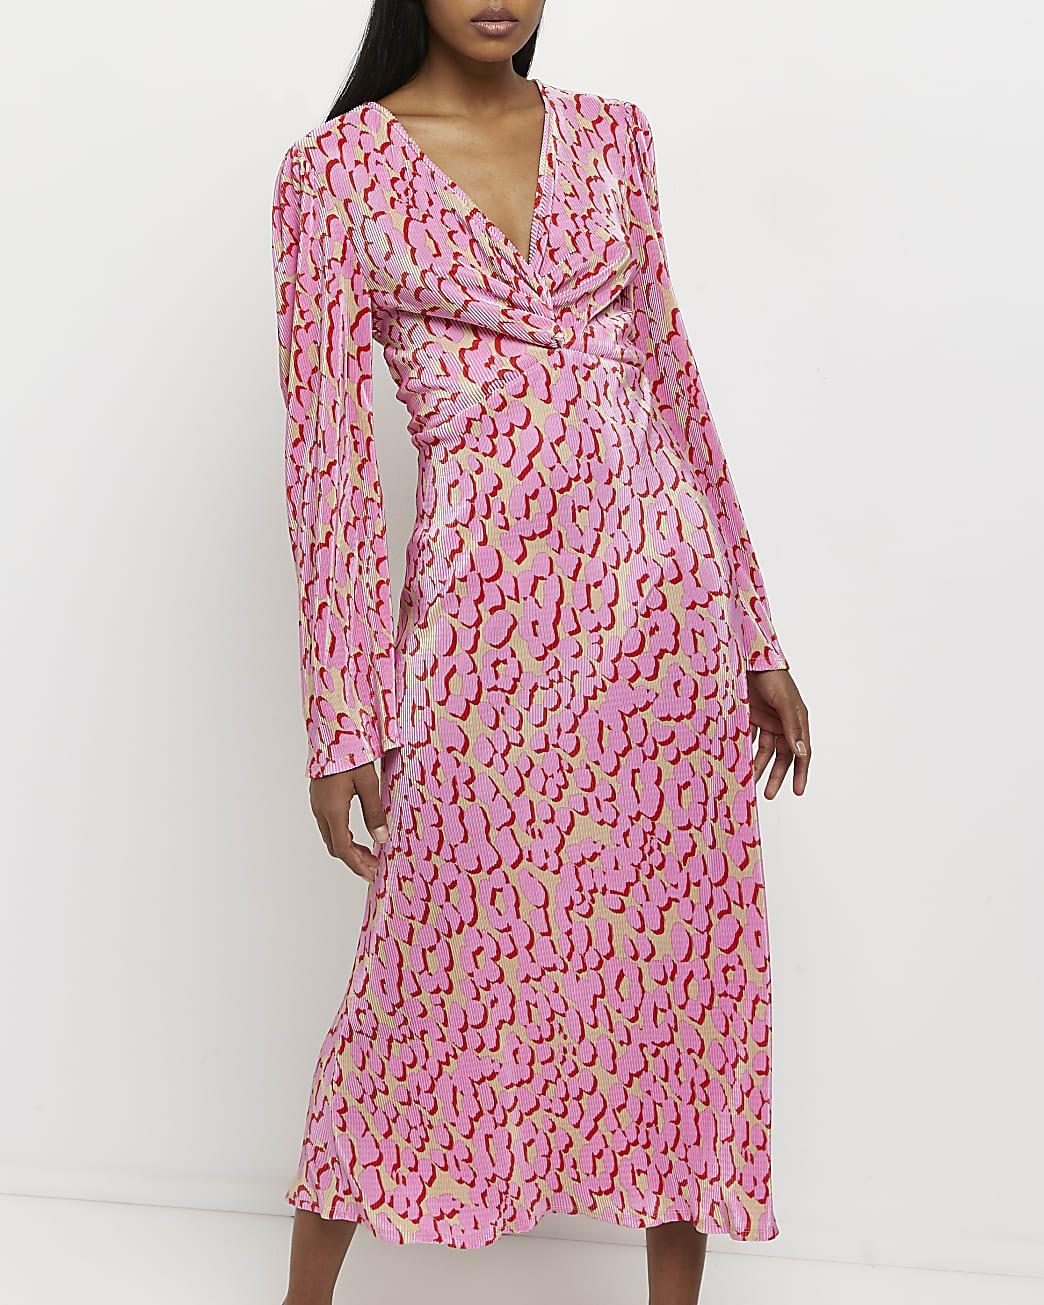 river island pink leopard print dress